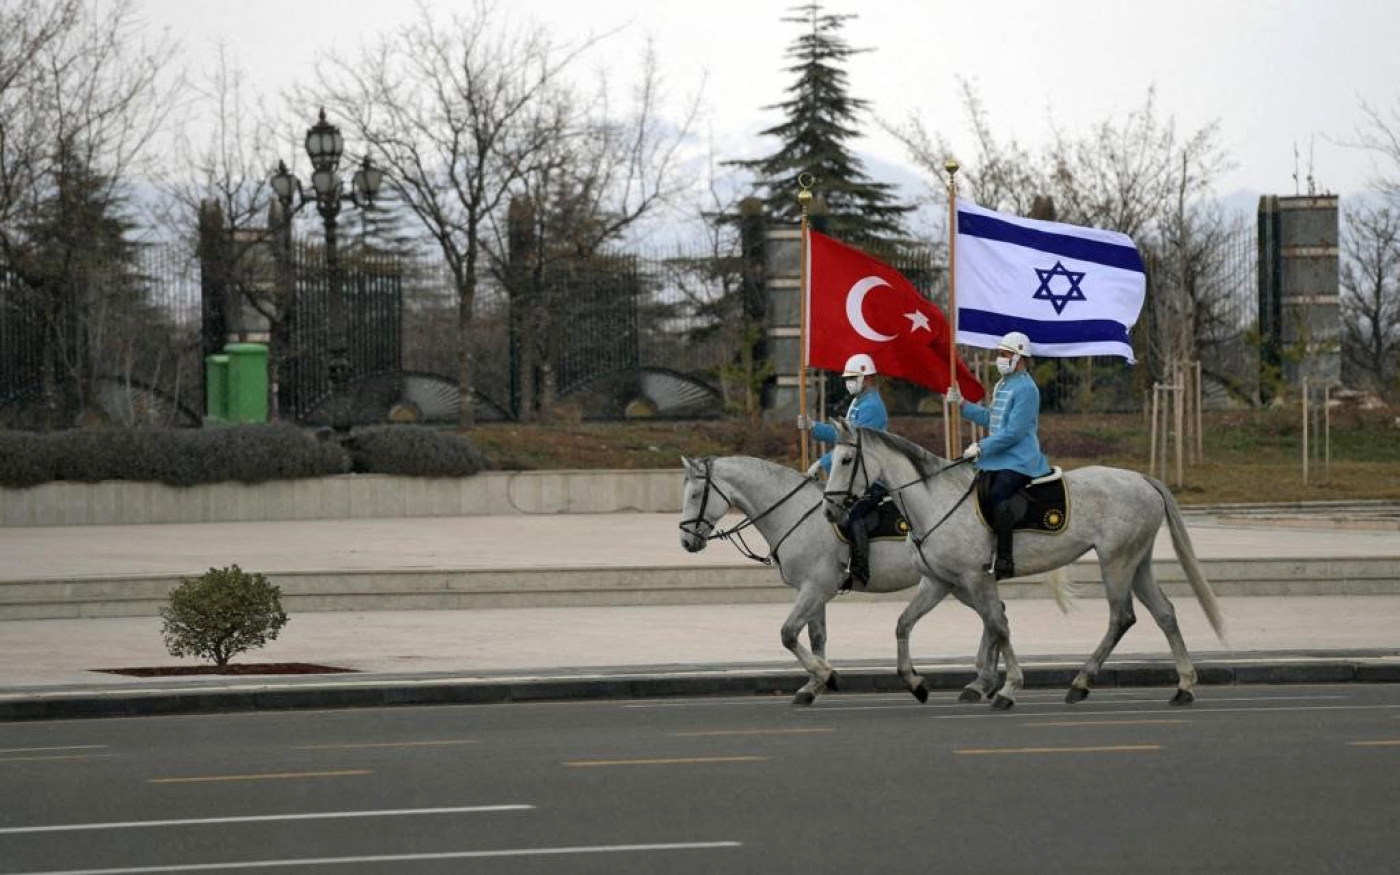 Des gardes de cavalerie turcs agitent des drapeaux israélien et turc, pour accueillir le président israélien dans la capitale Ankara (AFP)